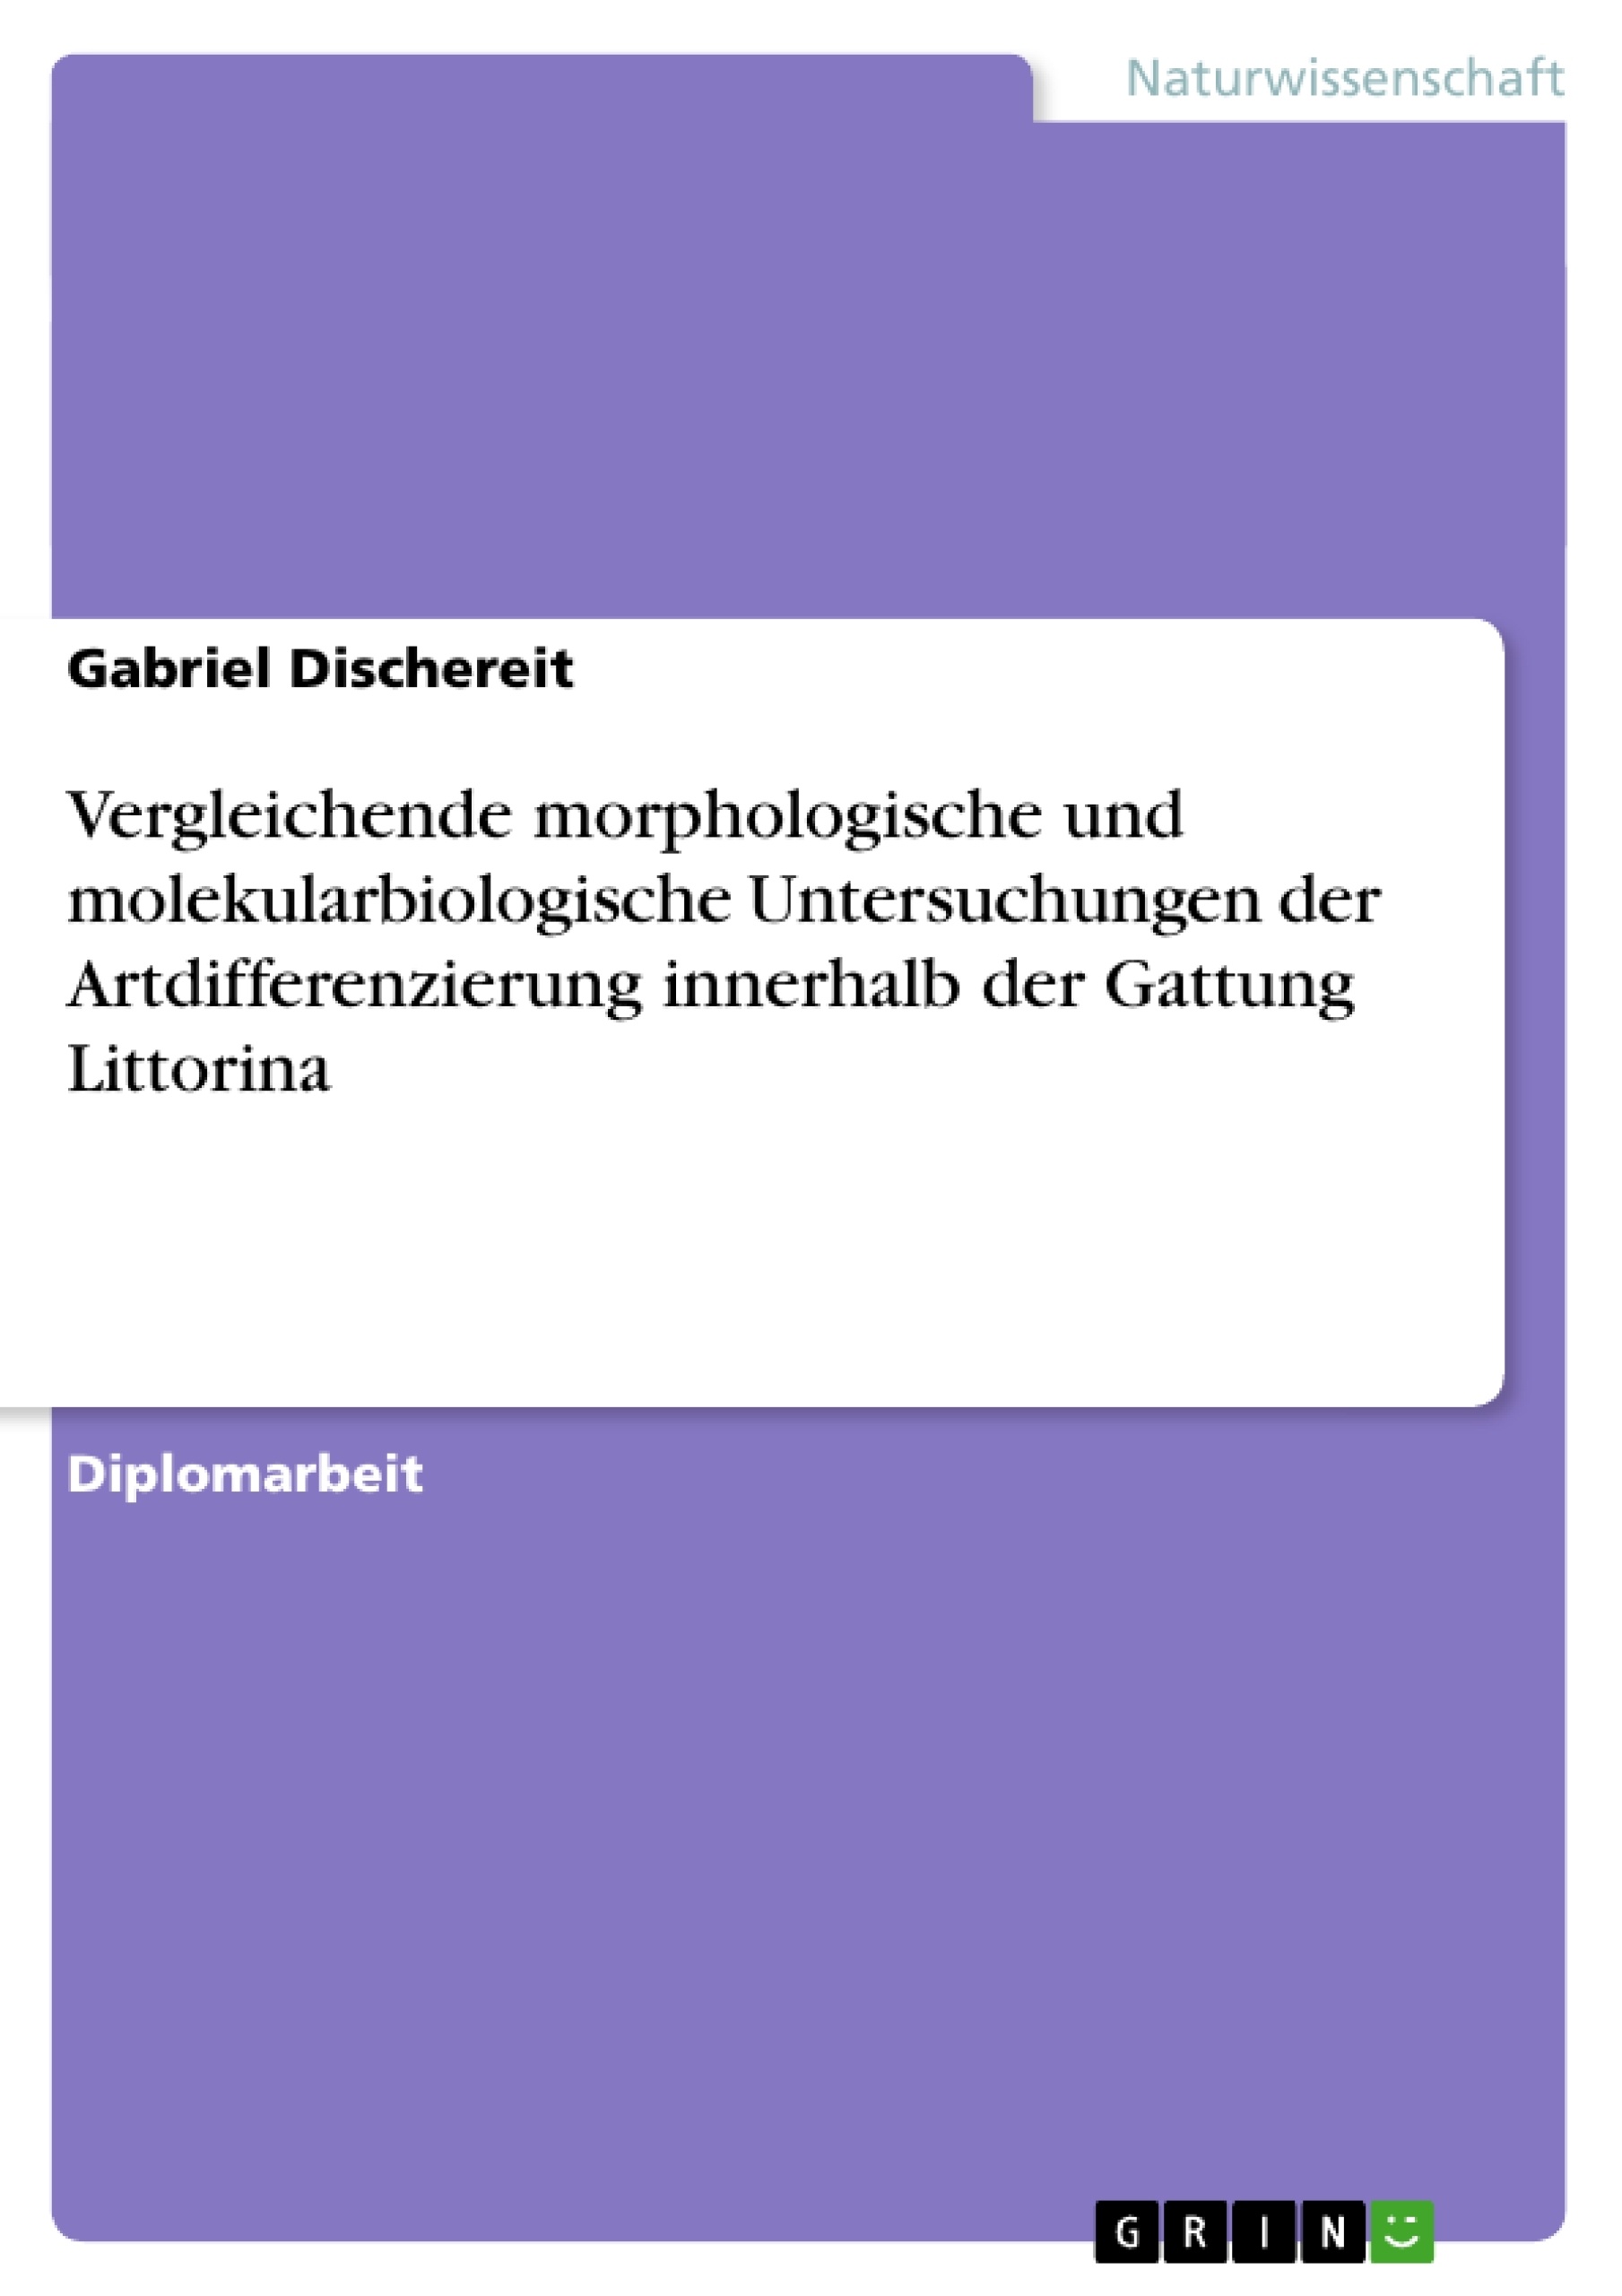 Title: Vergleichende morphologische und molekularbiologische Untersuchungen der Artdifferenzierung innerhalb der Gattung Littorina